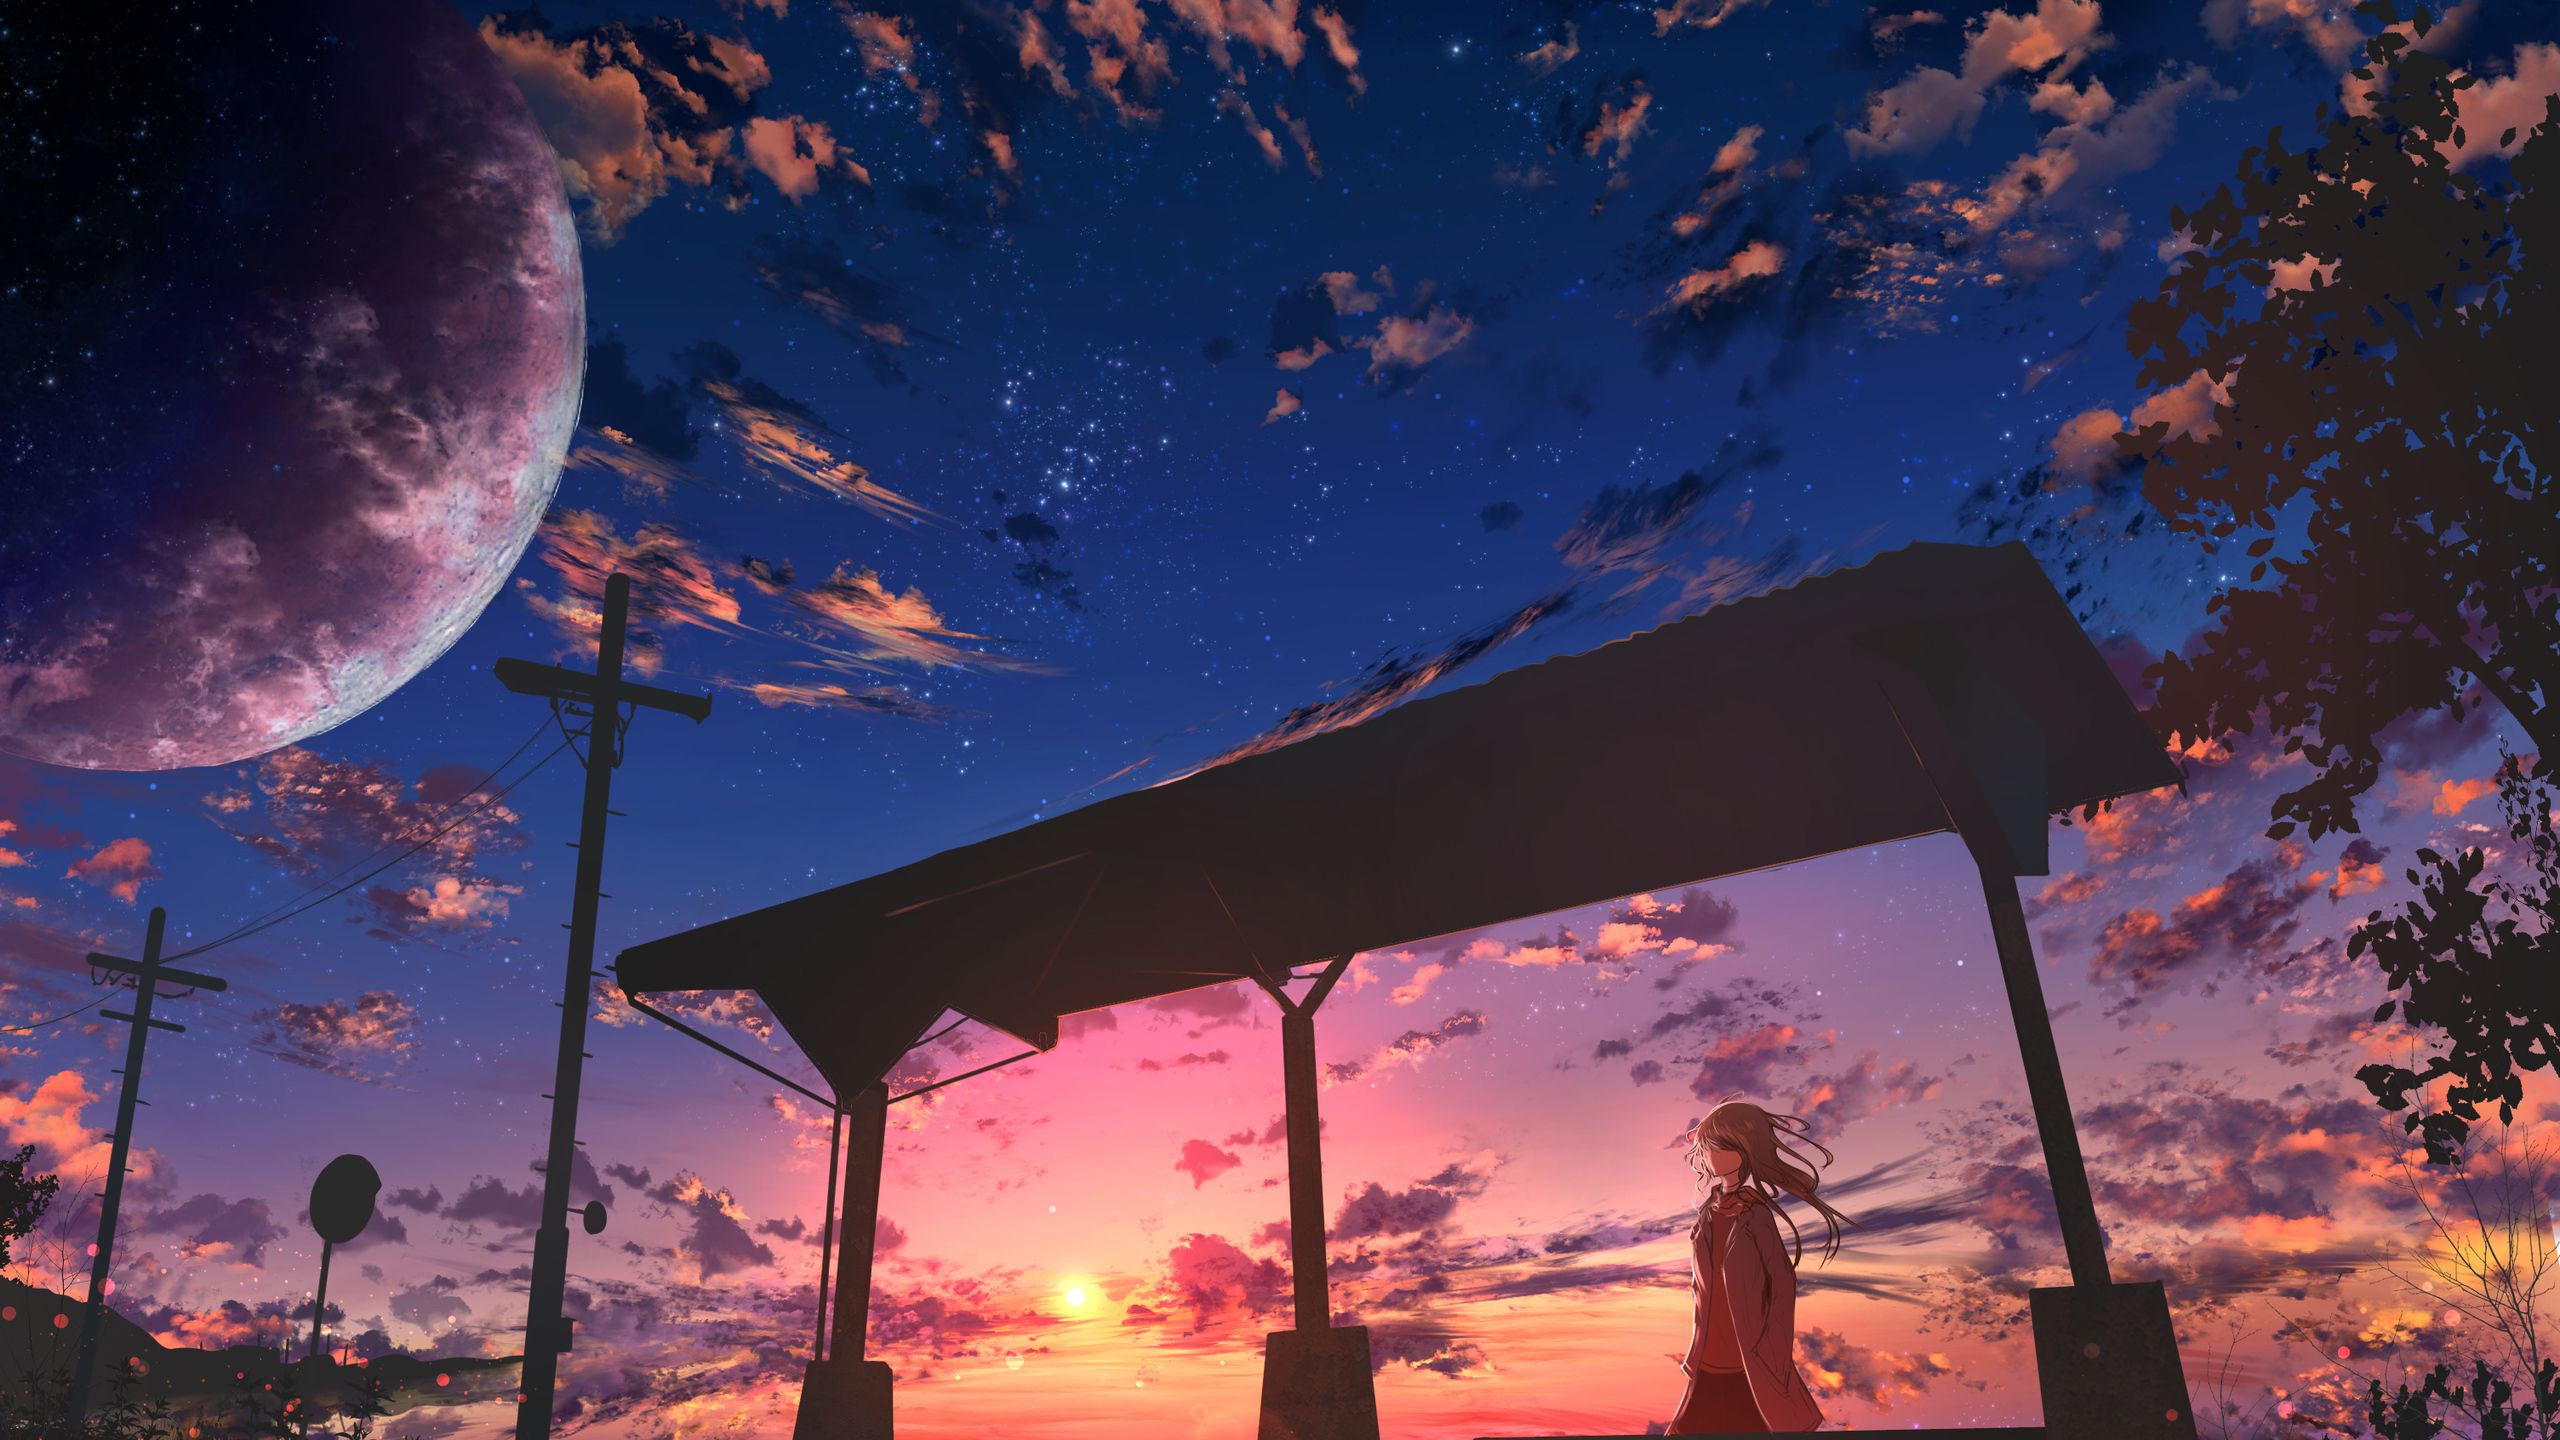 Starry Sky Anime Girl 1440P Resolution HD 4k Wallpaper